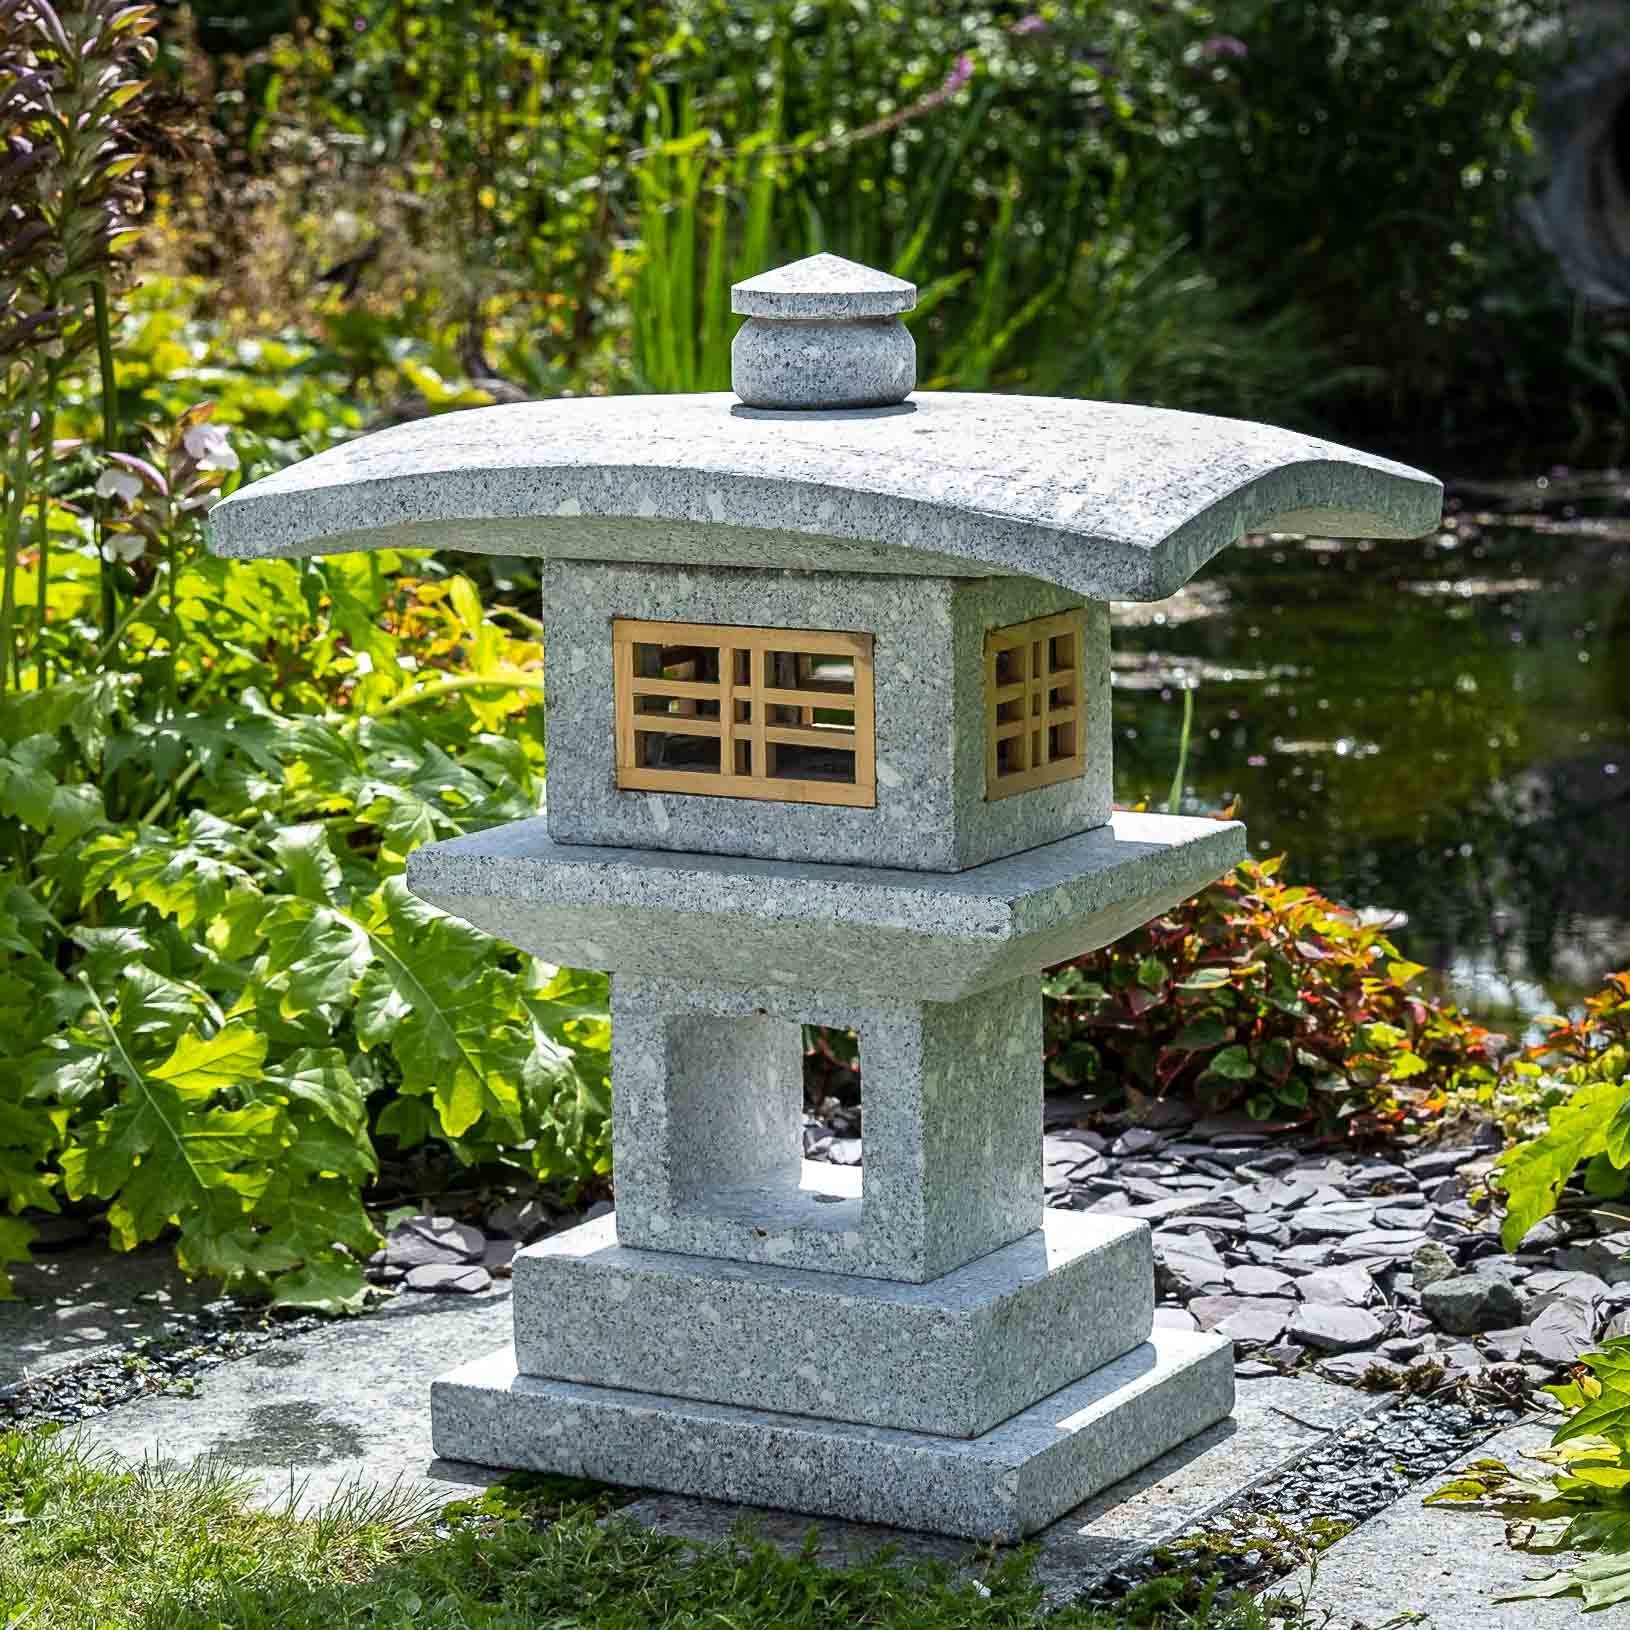 Regen Kanjuji, gegen Gartenfigur Naturprodukt Frost, witterungsbeständig – IDYL und robust Granit – UV-Strahlung. – Granit ein sehr